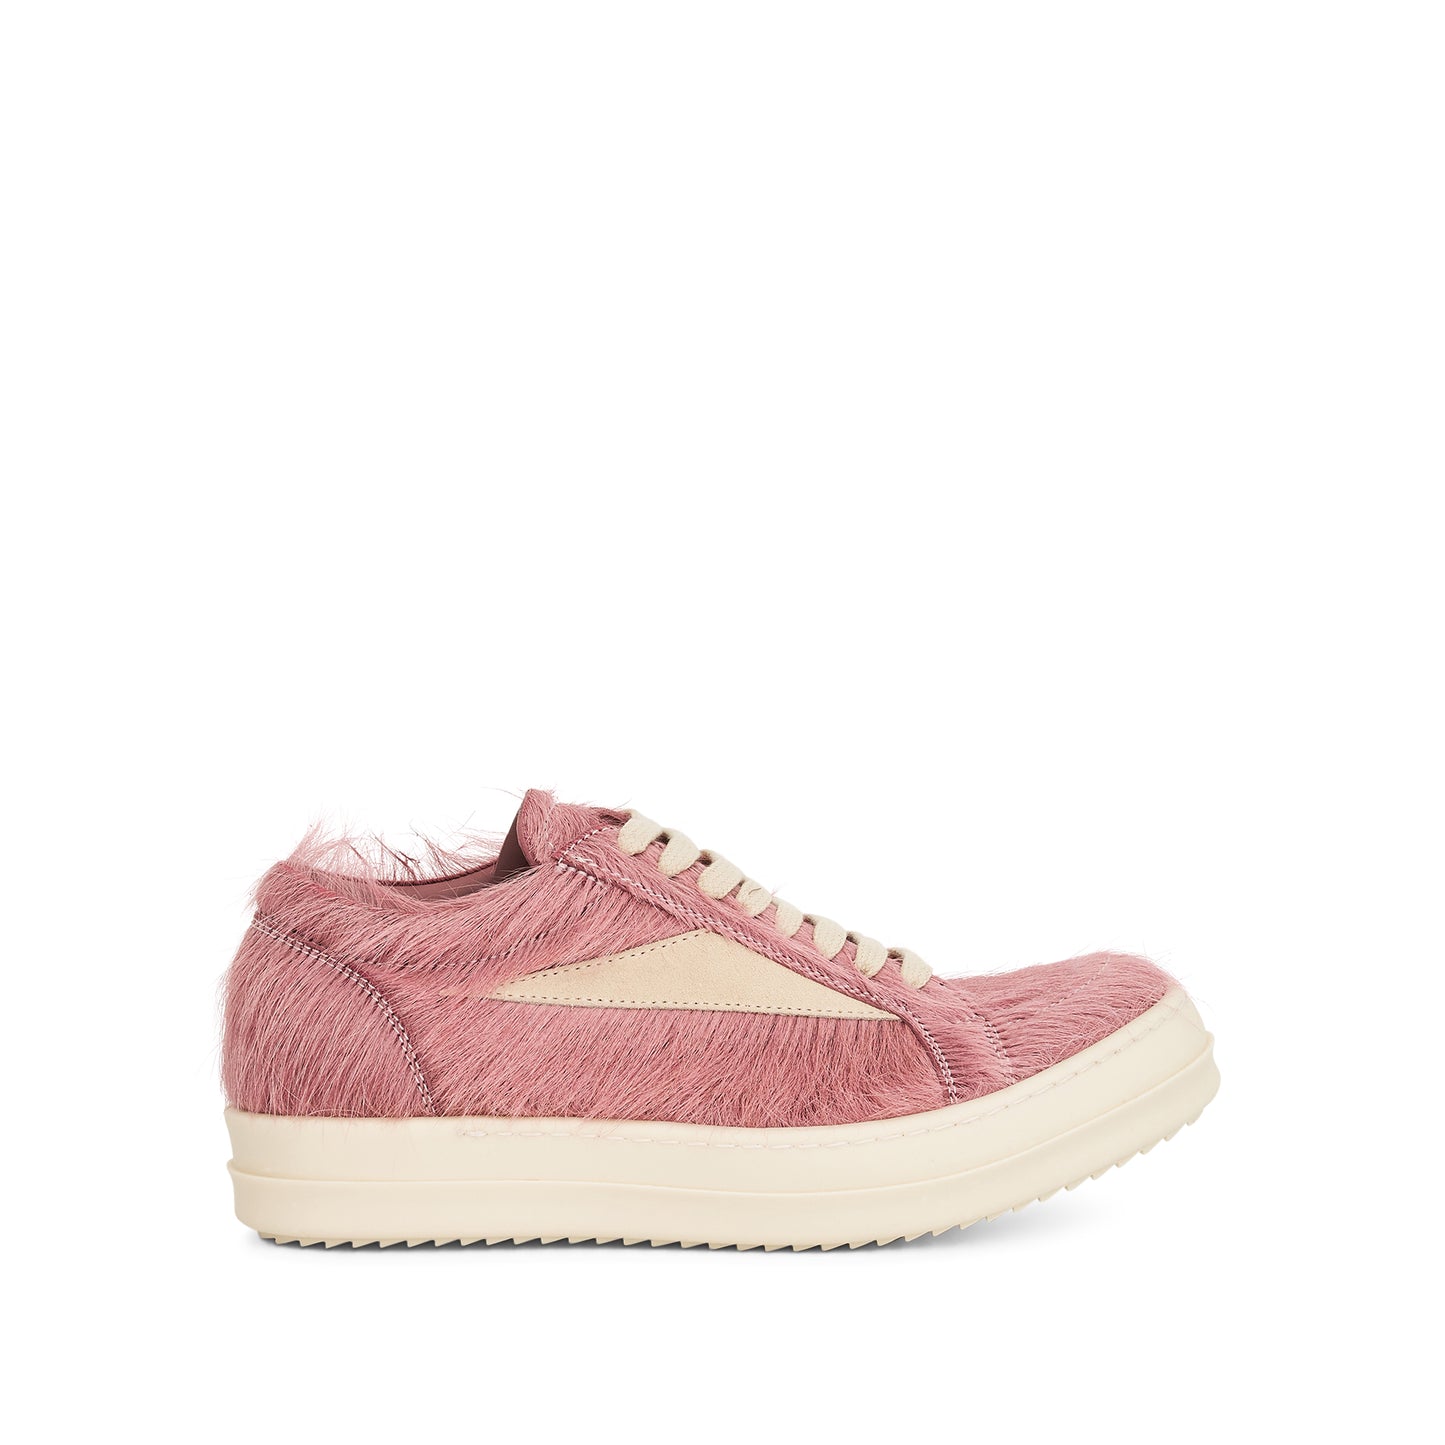 Vintage Fur Sneaker in Dusty Pink/Milk